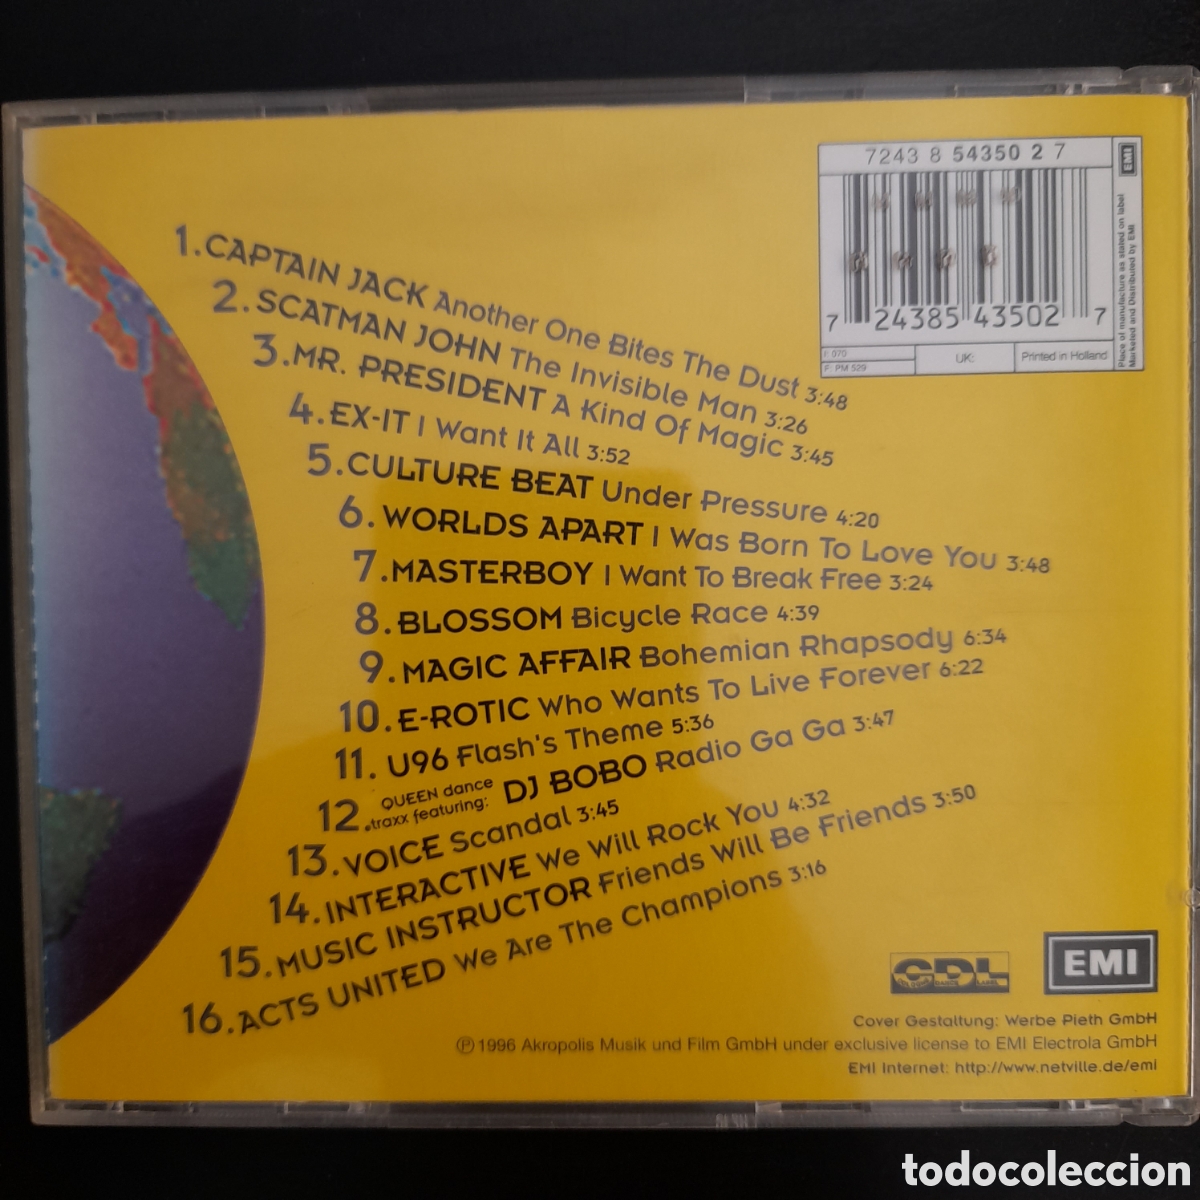 queen dance traxx i. 1996, eueopa.cd, album - Buy Cd's of Techno